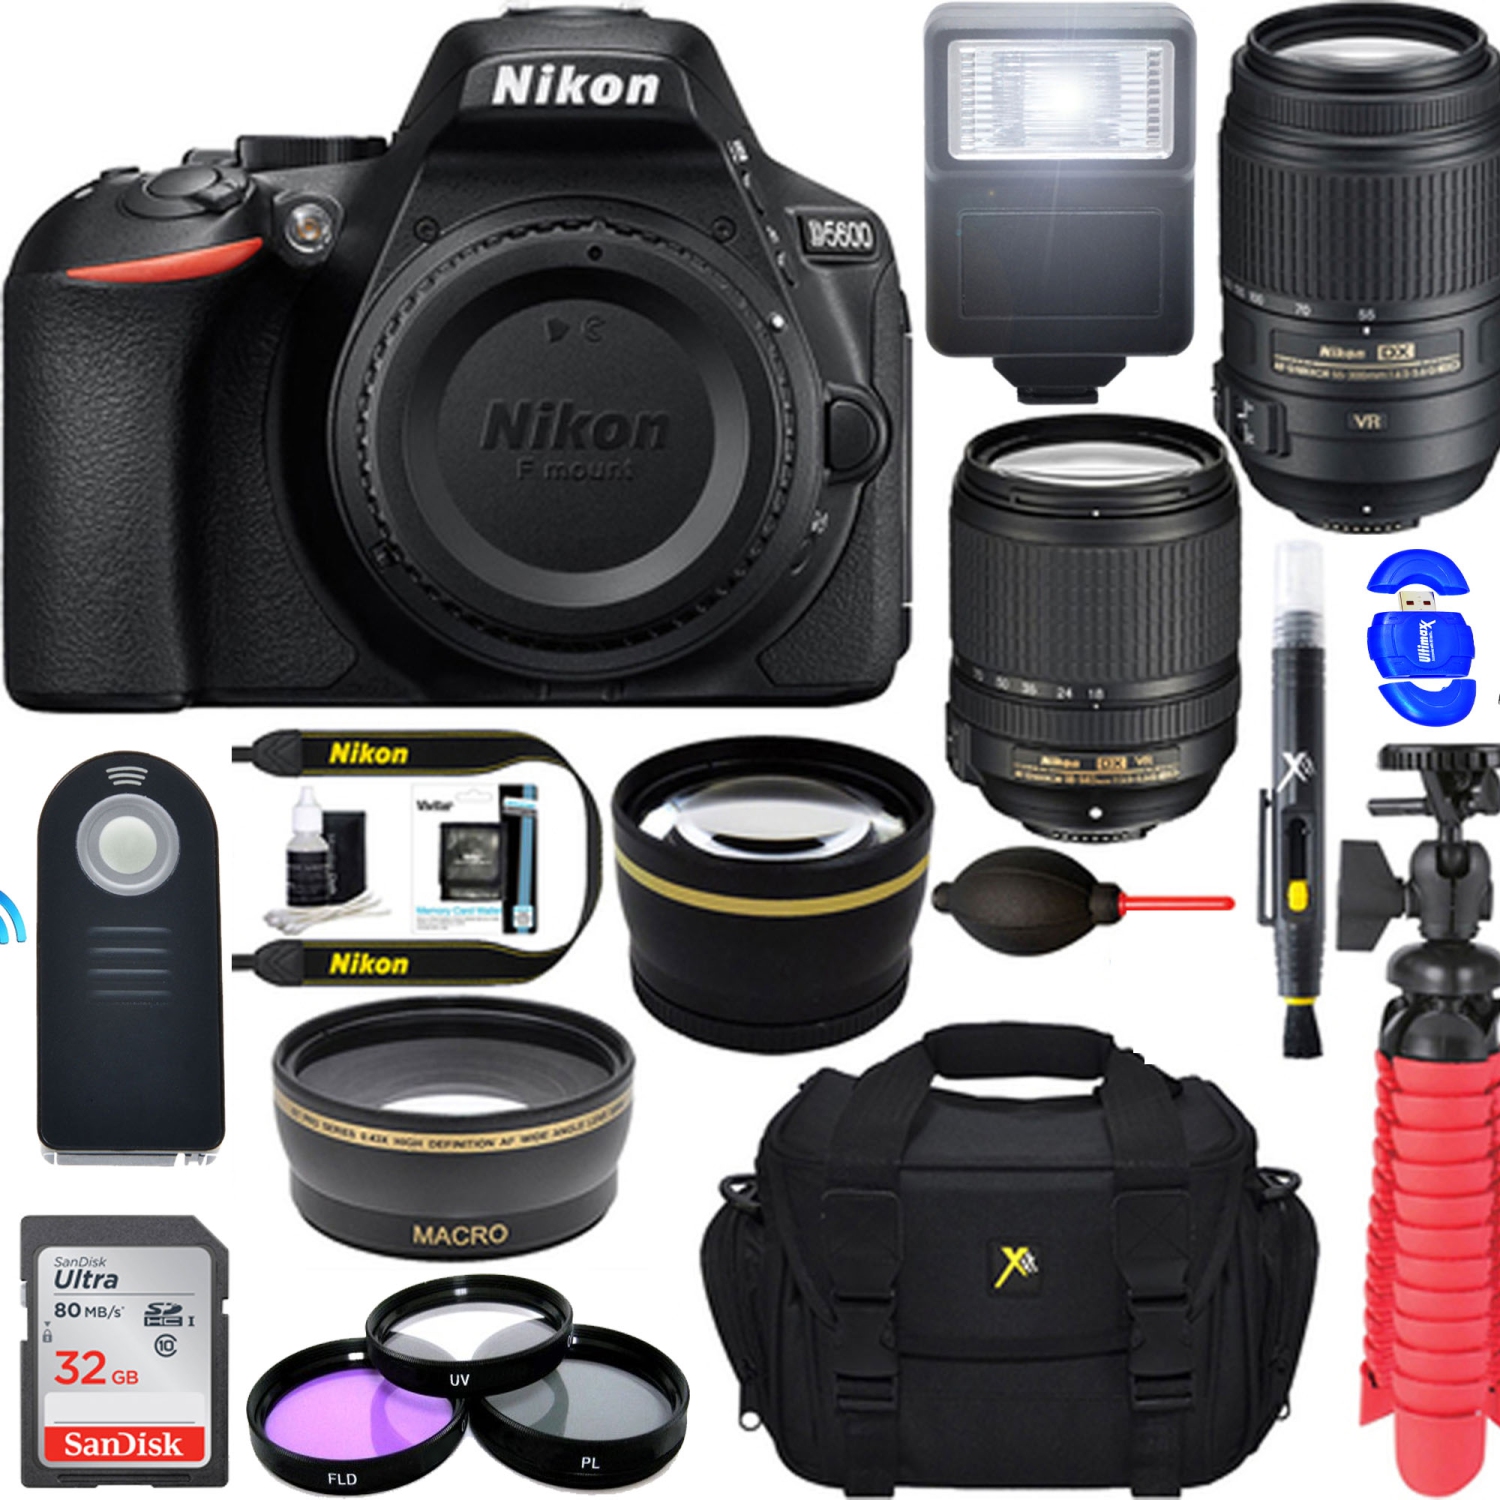 Nikon D5600 24.2MP DX-Format DSLR Camera w/ AF-S 18-140mm & 55-300mm ED VR Lens + Accessory Bundle - US Version w/ Seller Warranty